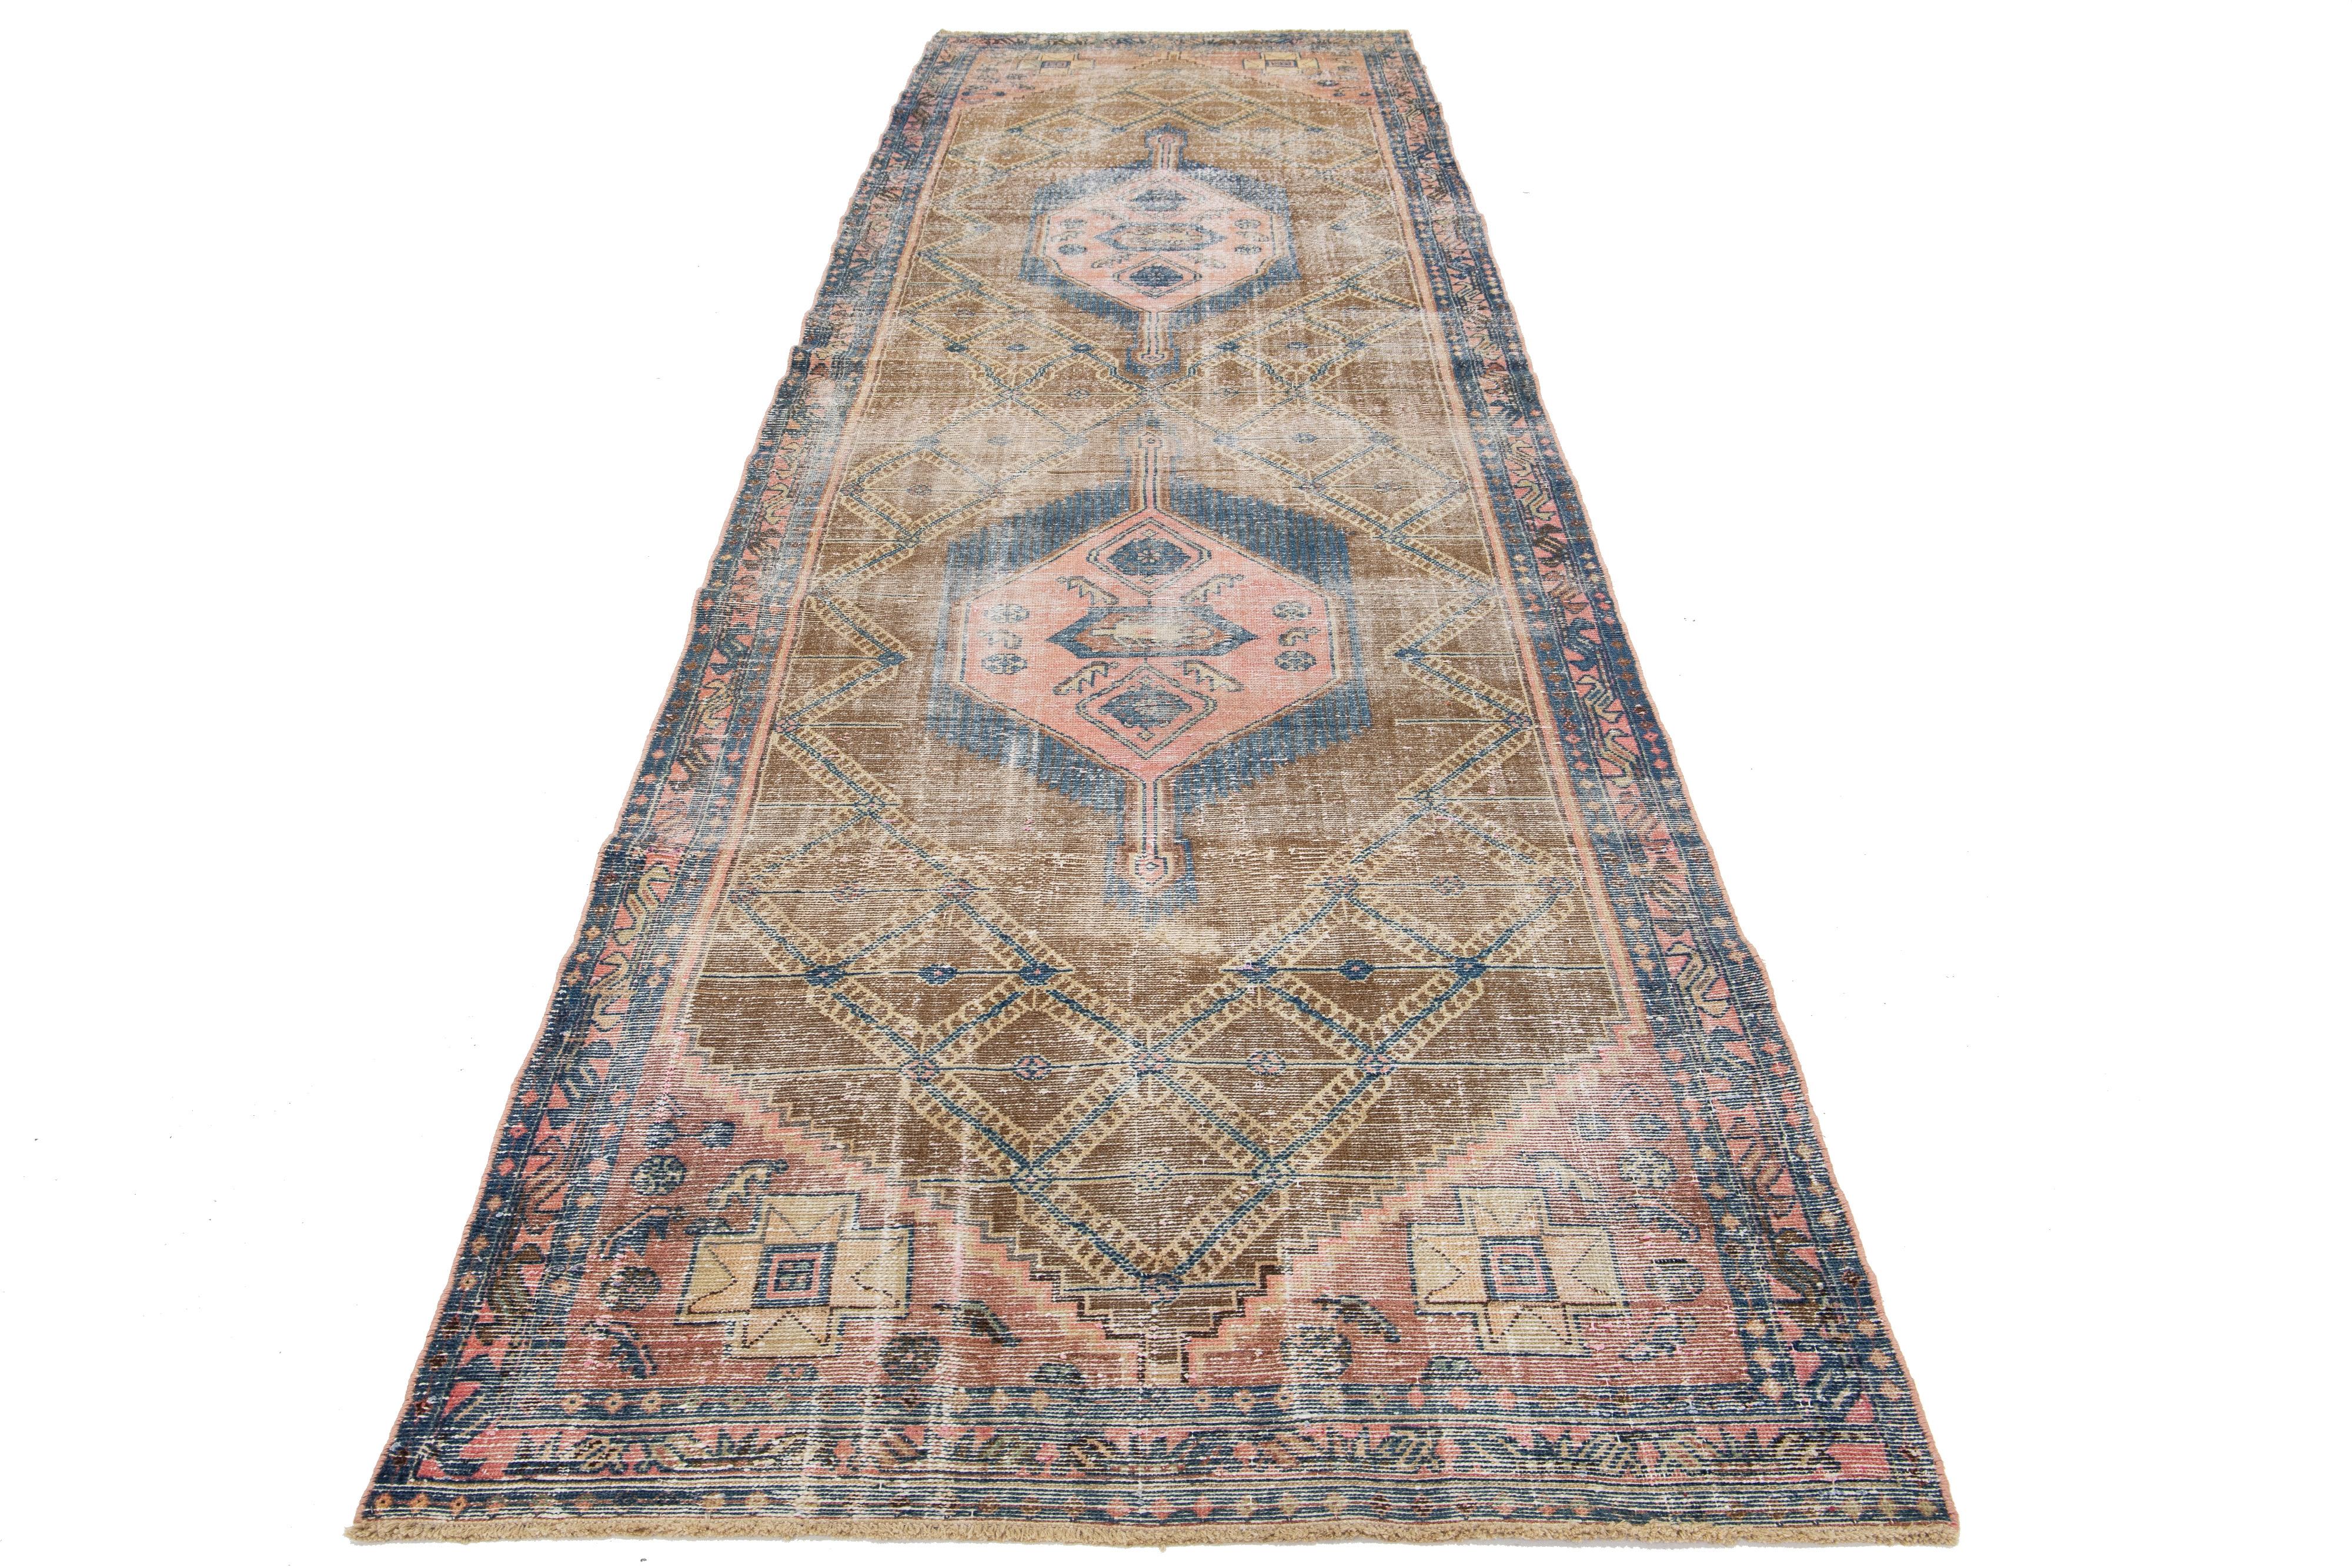 Ce chemin de table en laine vintage présente un champ marron avec des accents tribaux pêches et bleus d'origine persane.

Ce tapis mesure 4'2